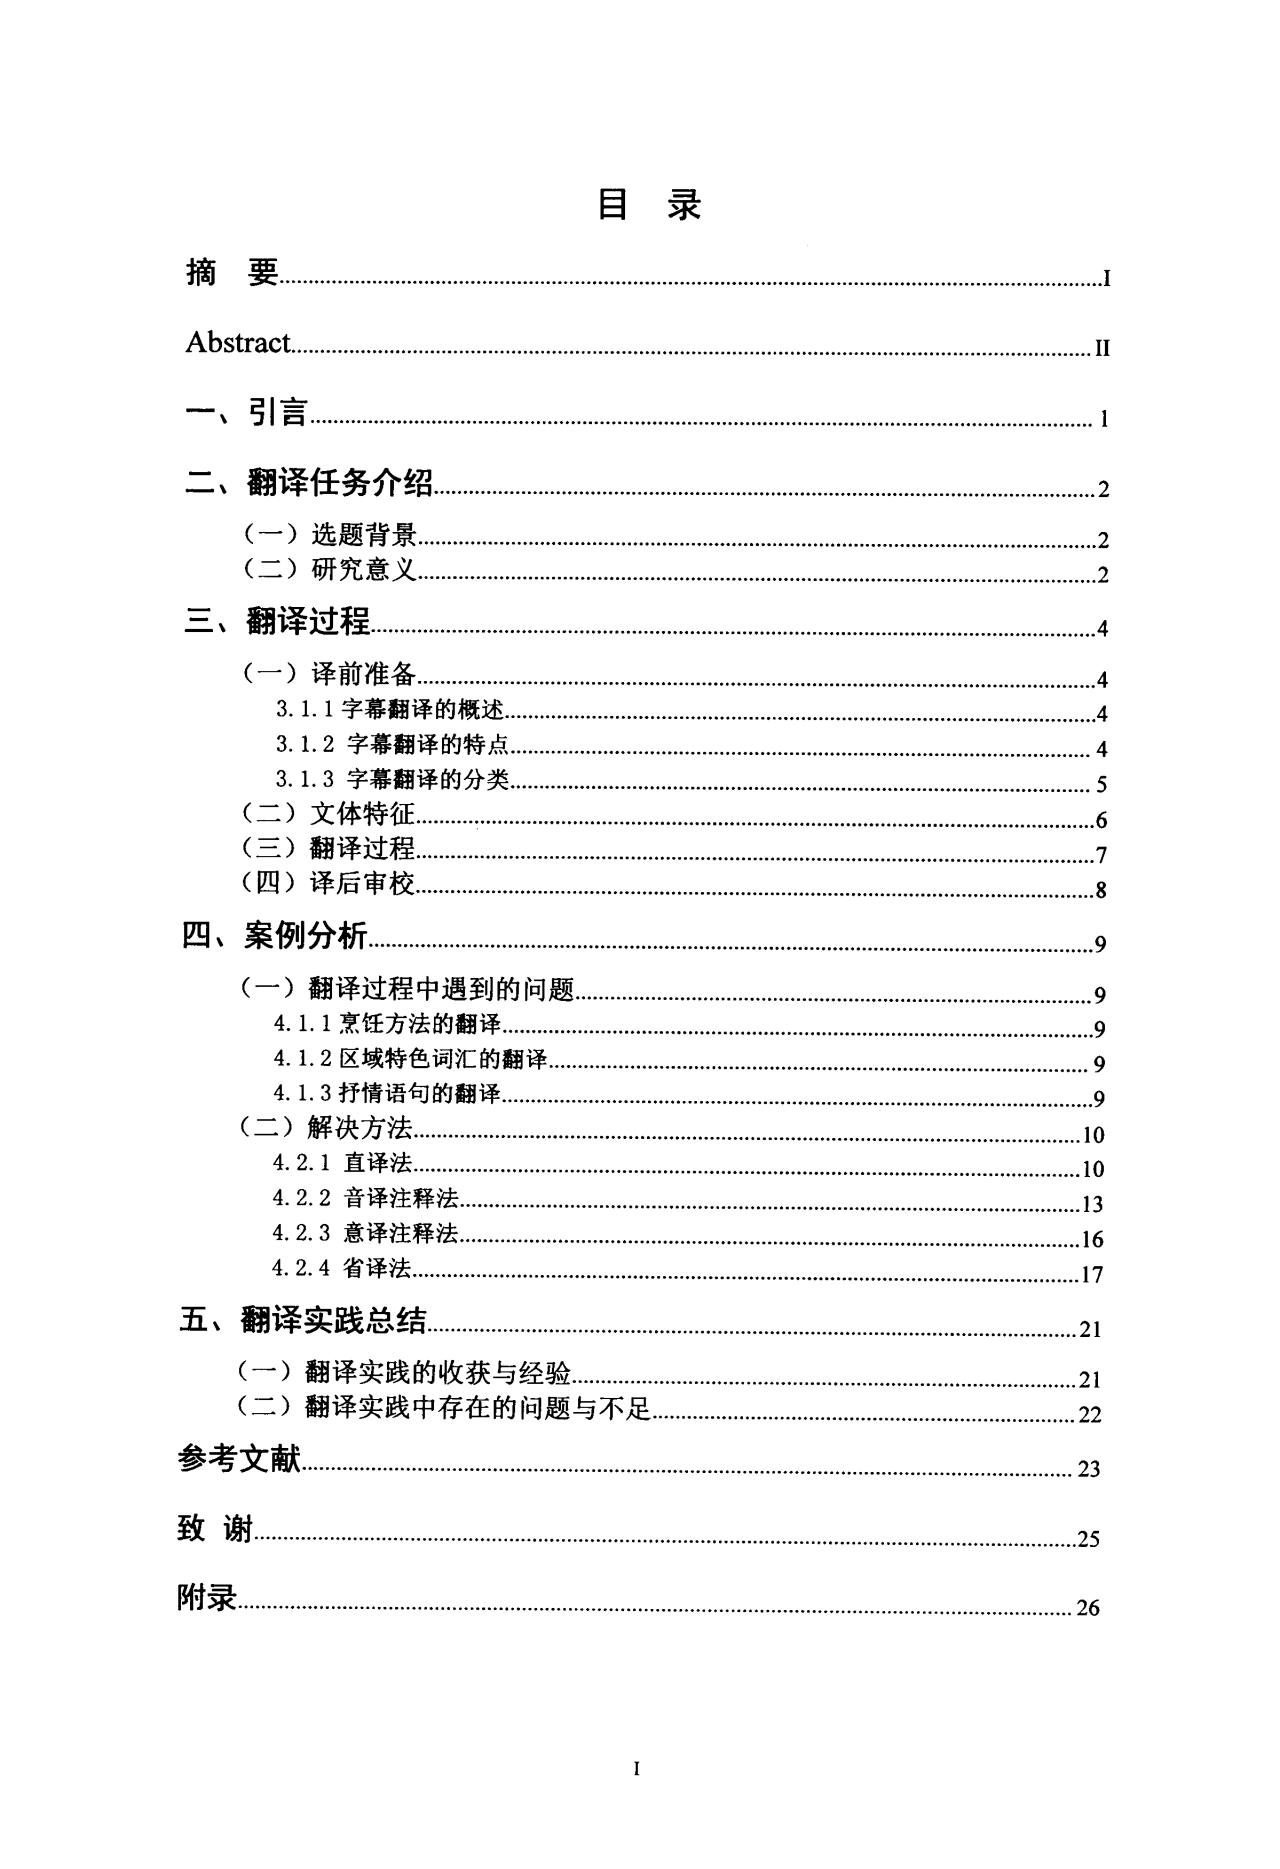 《舌尖上的中国2》字幕英译实践报告